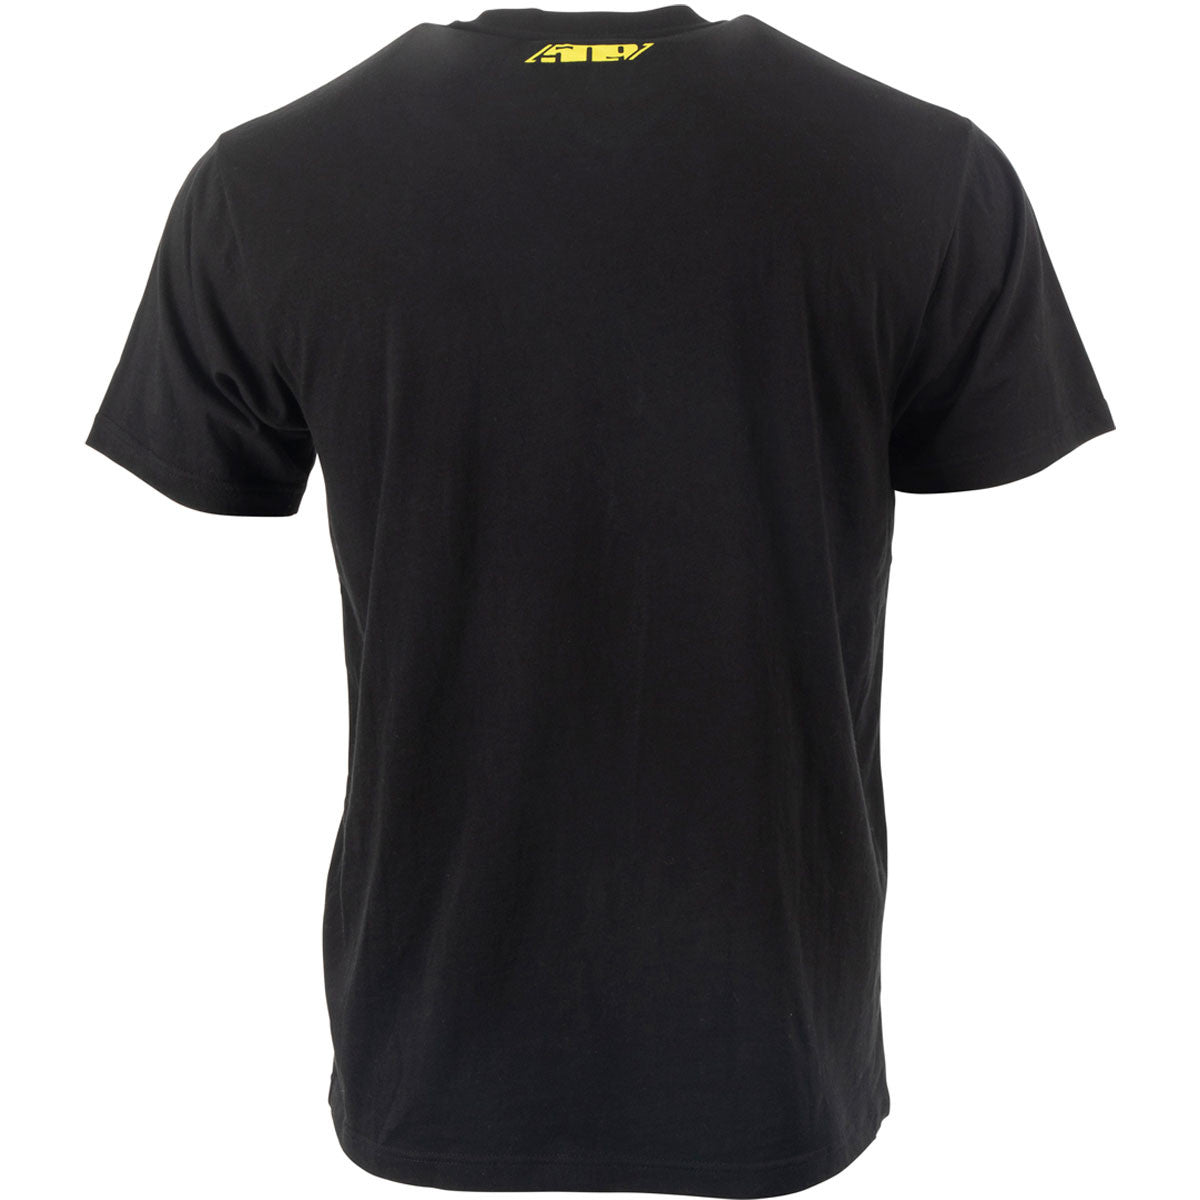 Arsenal T-Shirt - F09001200